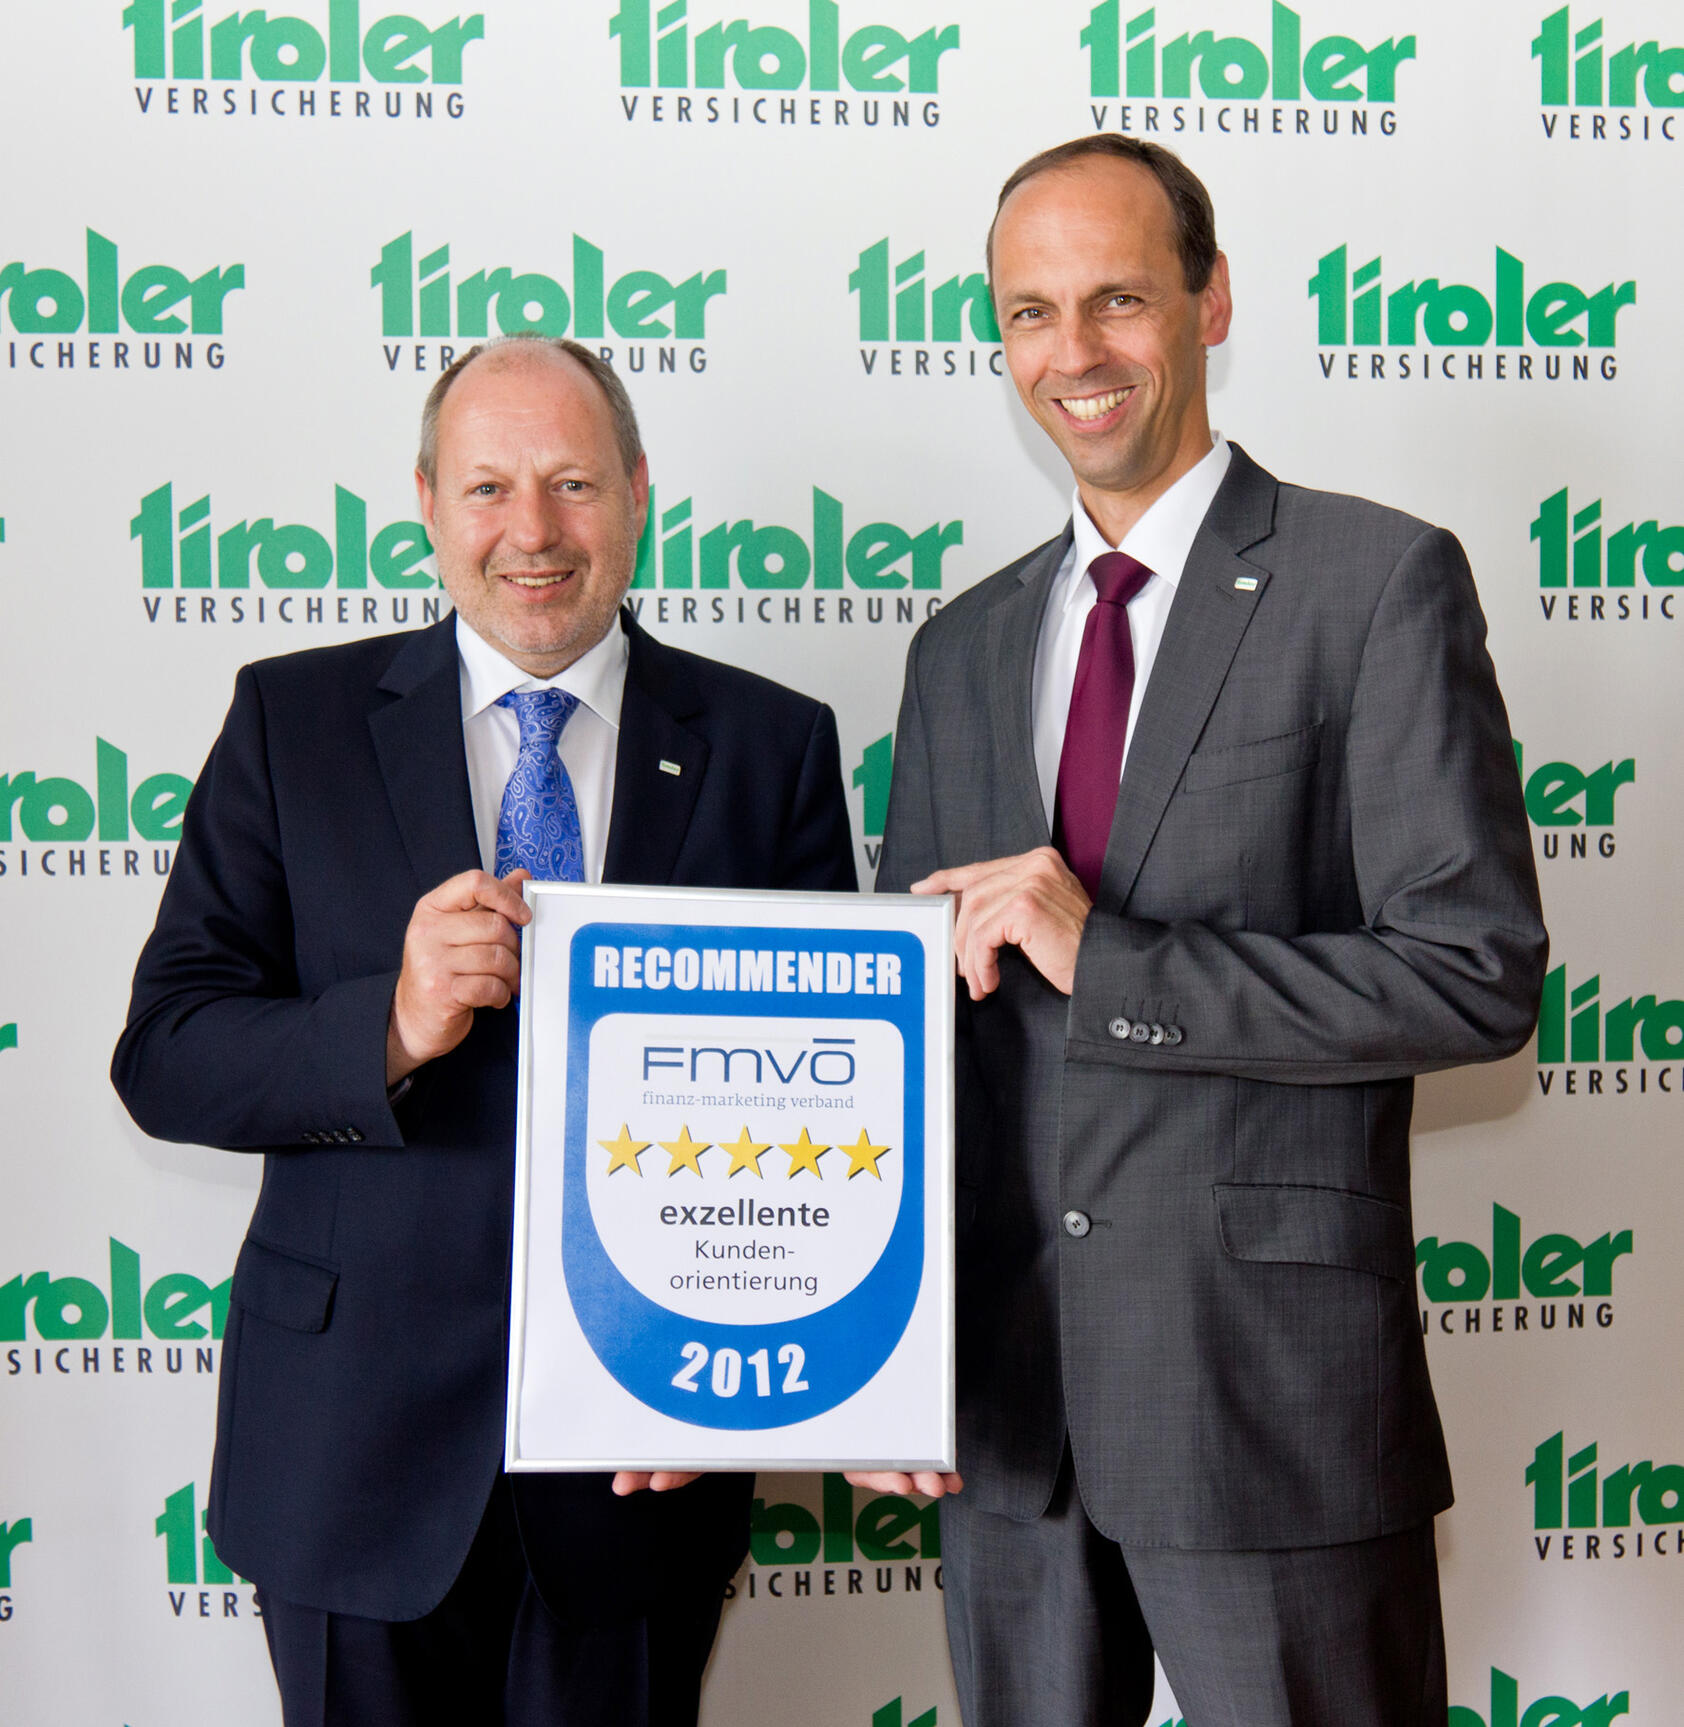 Die TIROLER-Vorstände Dr. Walter Schieferer und Mag. Franz Mair freuen sich über die hohe Auszeichnung als beliebteste Regionalversicherung Österreichs.